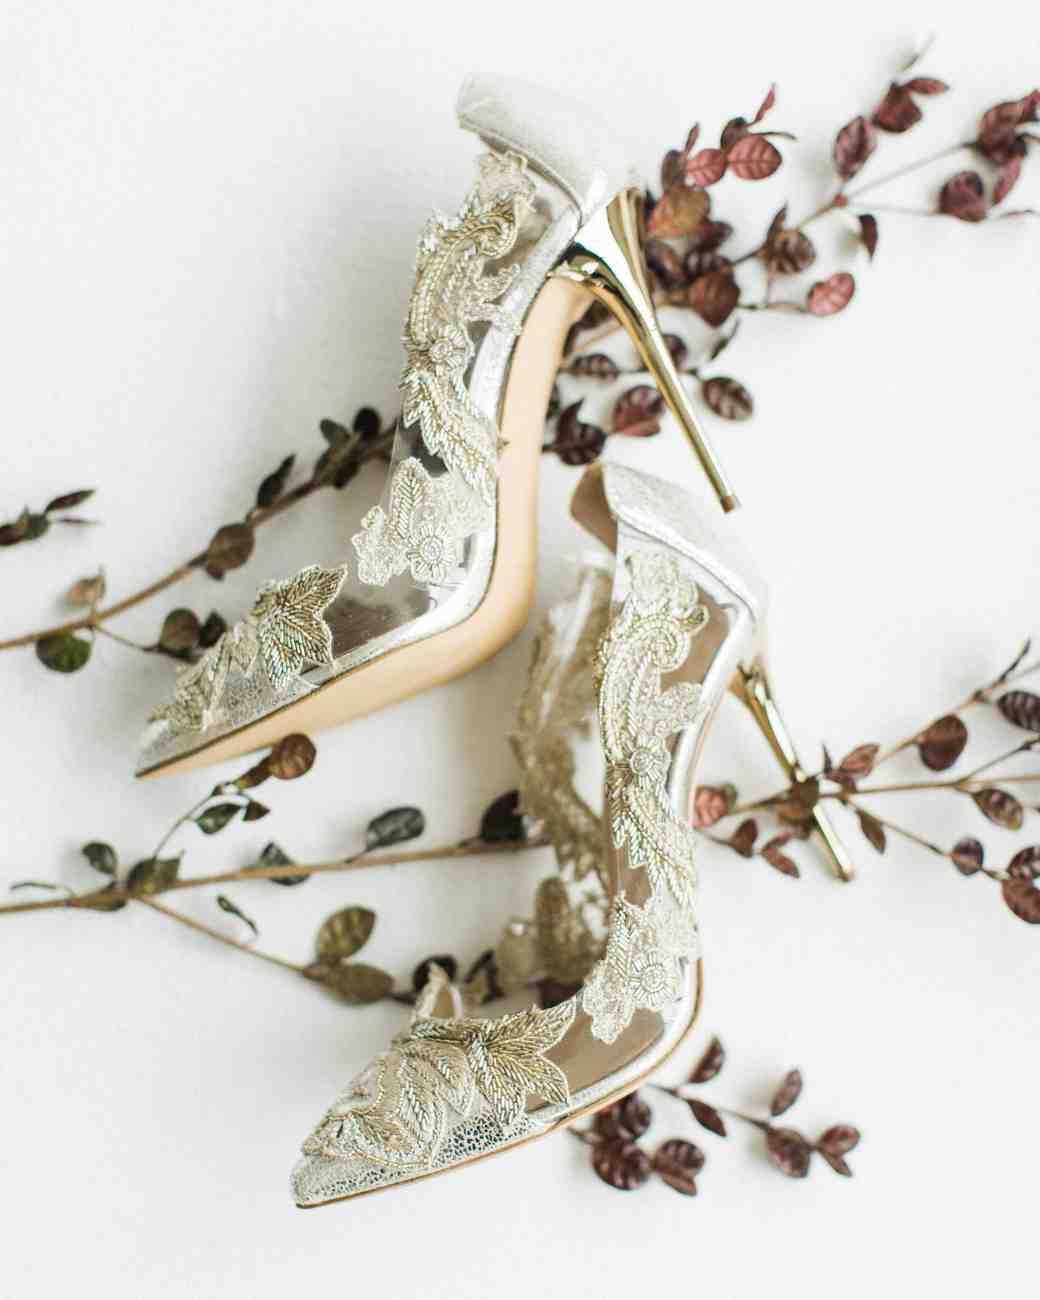 25 нетрадиционных идей свадебной обуви от стильных невест